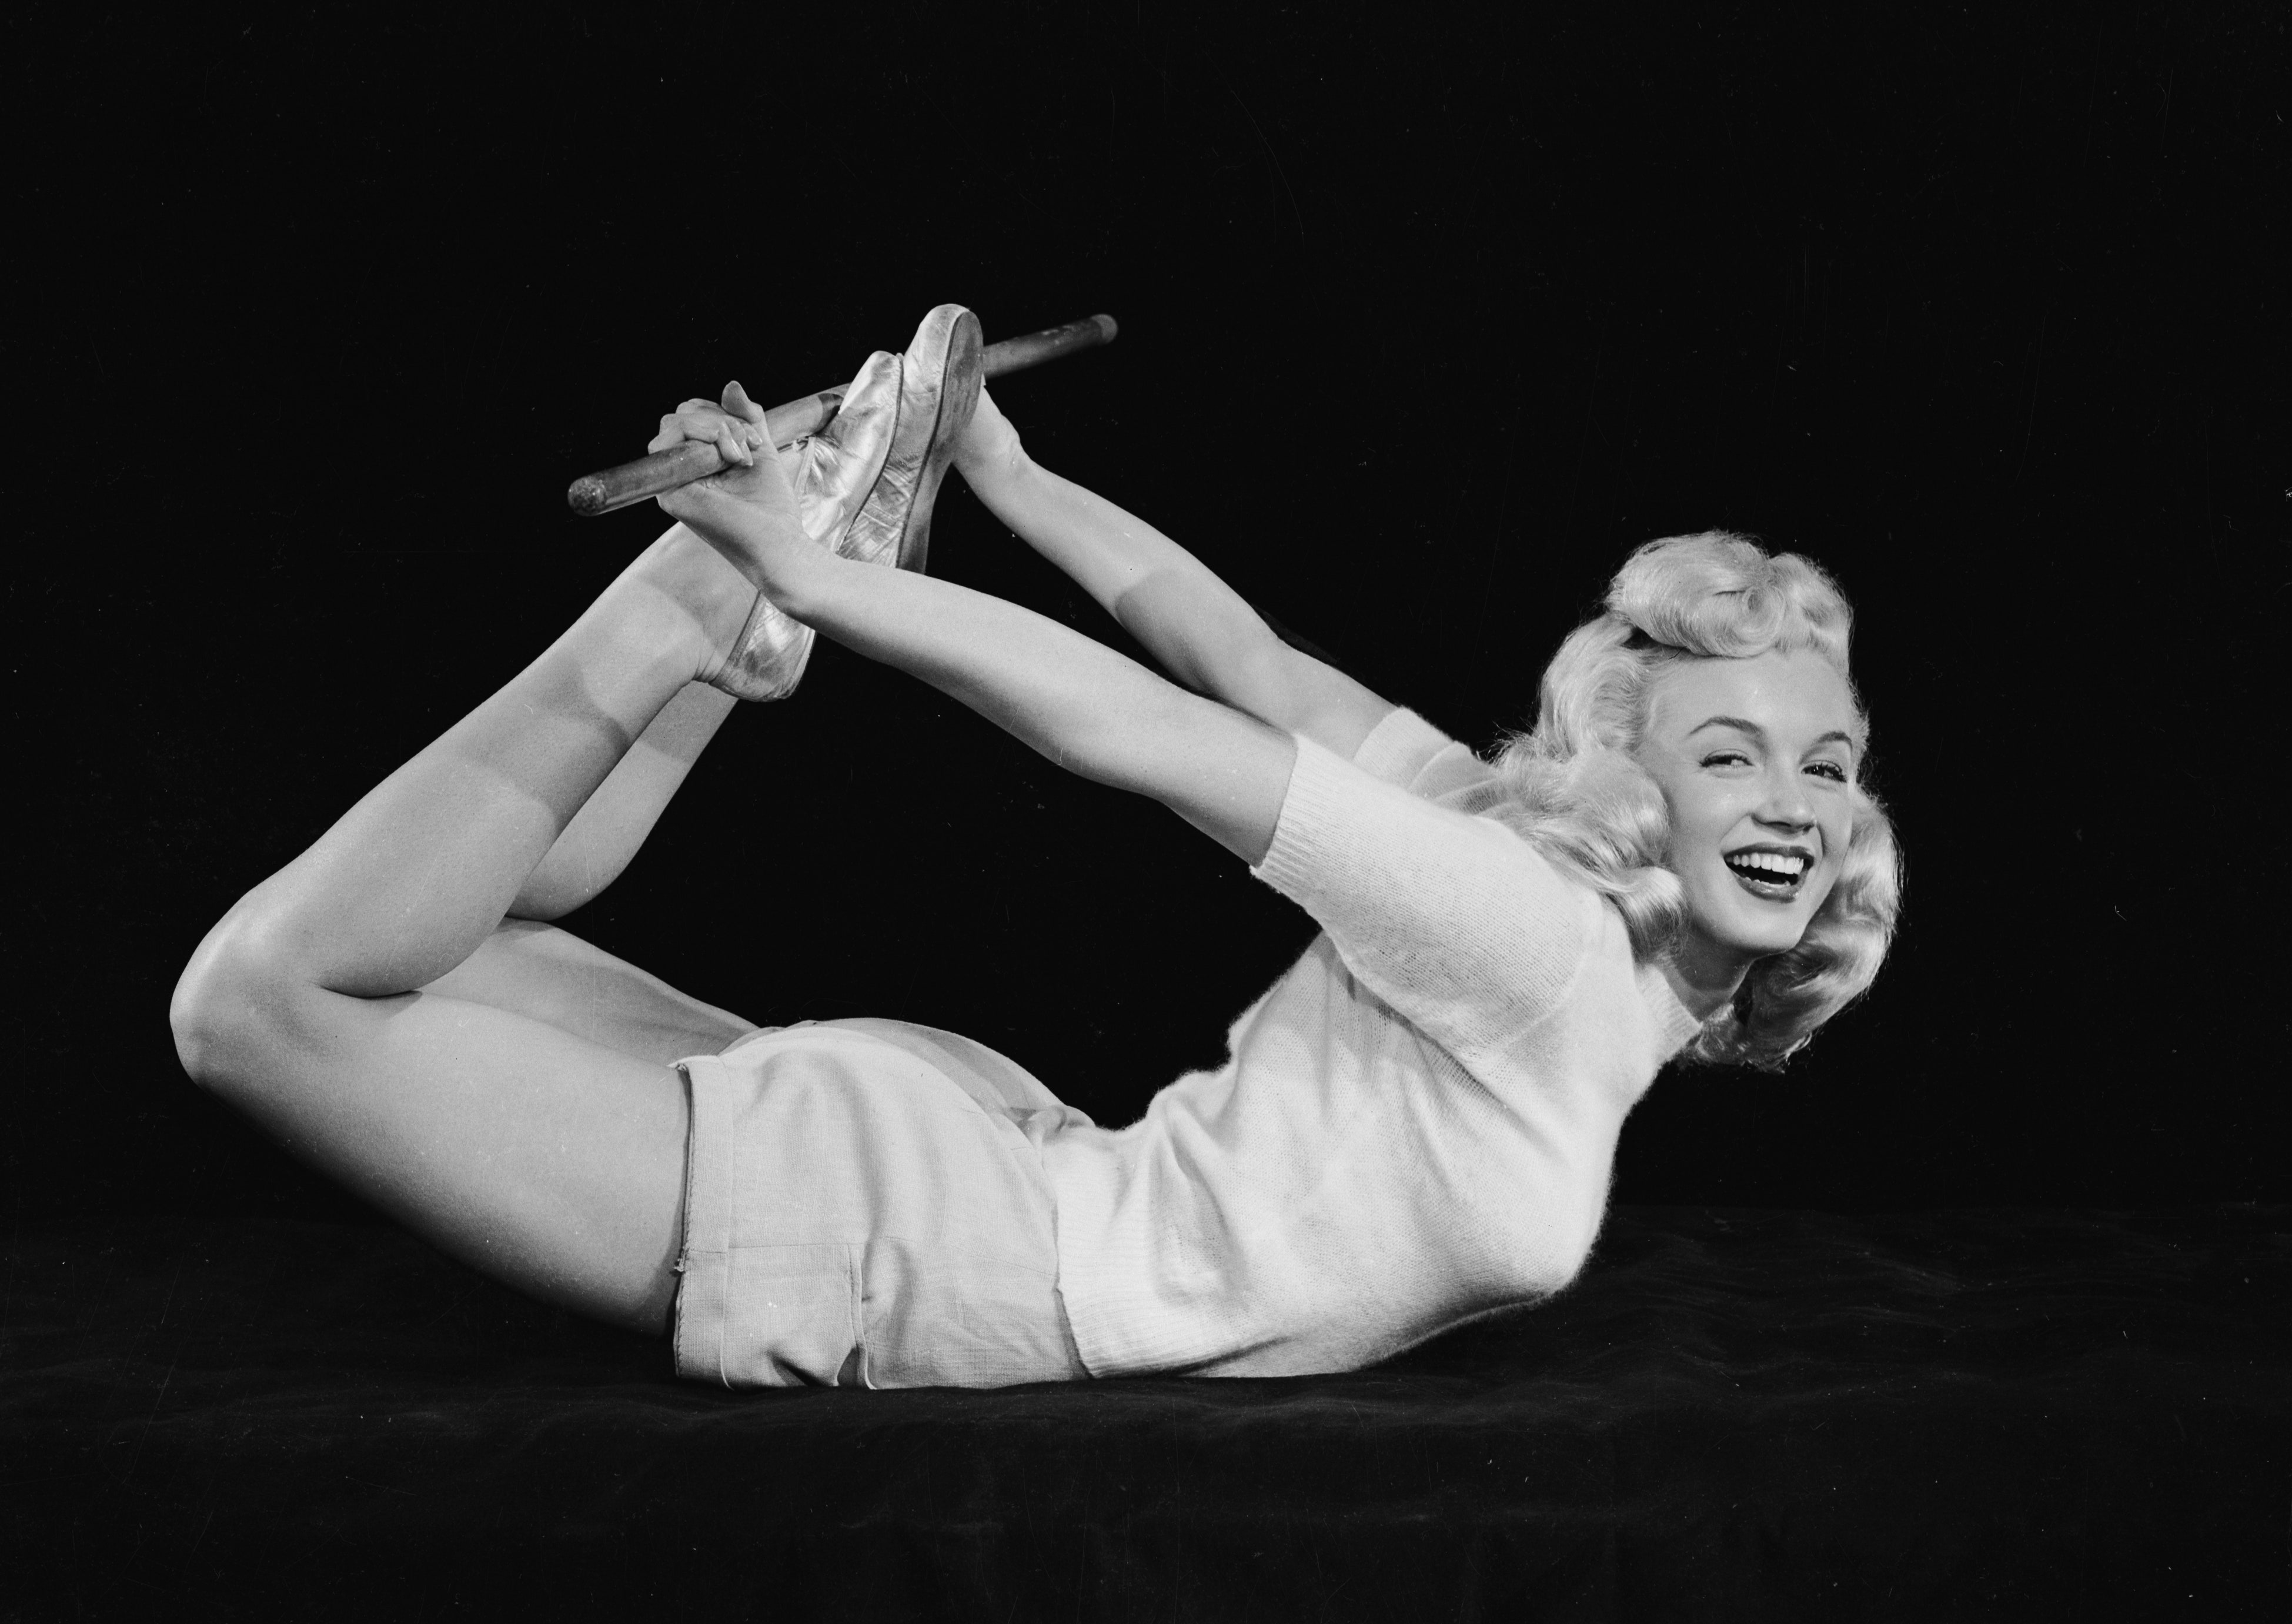 Bí kíp giảm cân kỳ lạ của huyền thoại màn ảnh Marilyn Monroe - ảnh 5